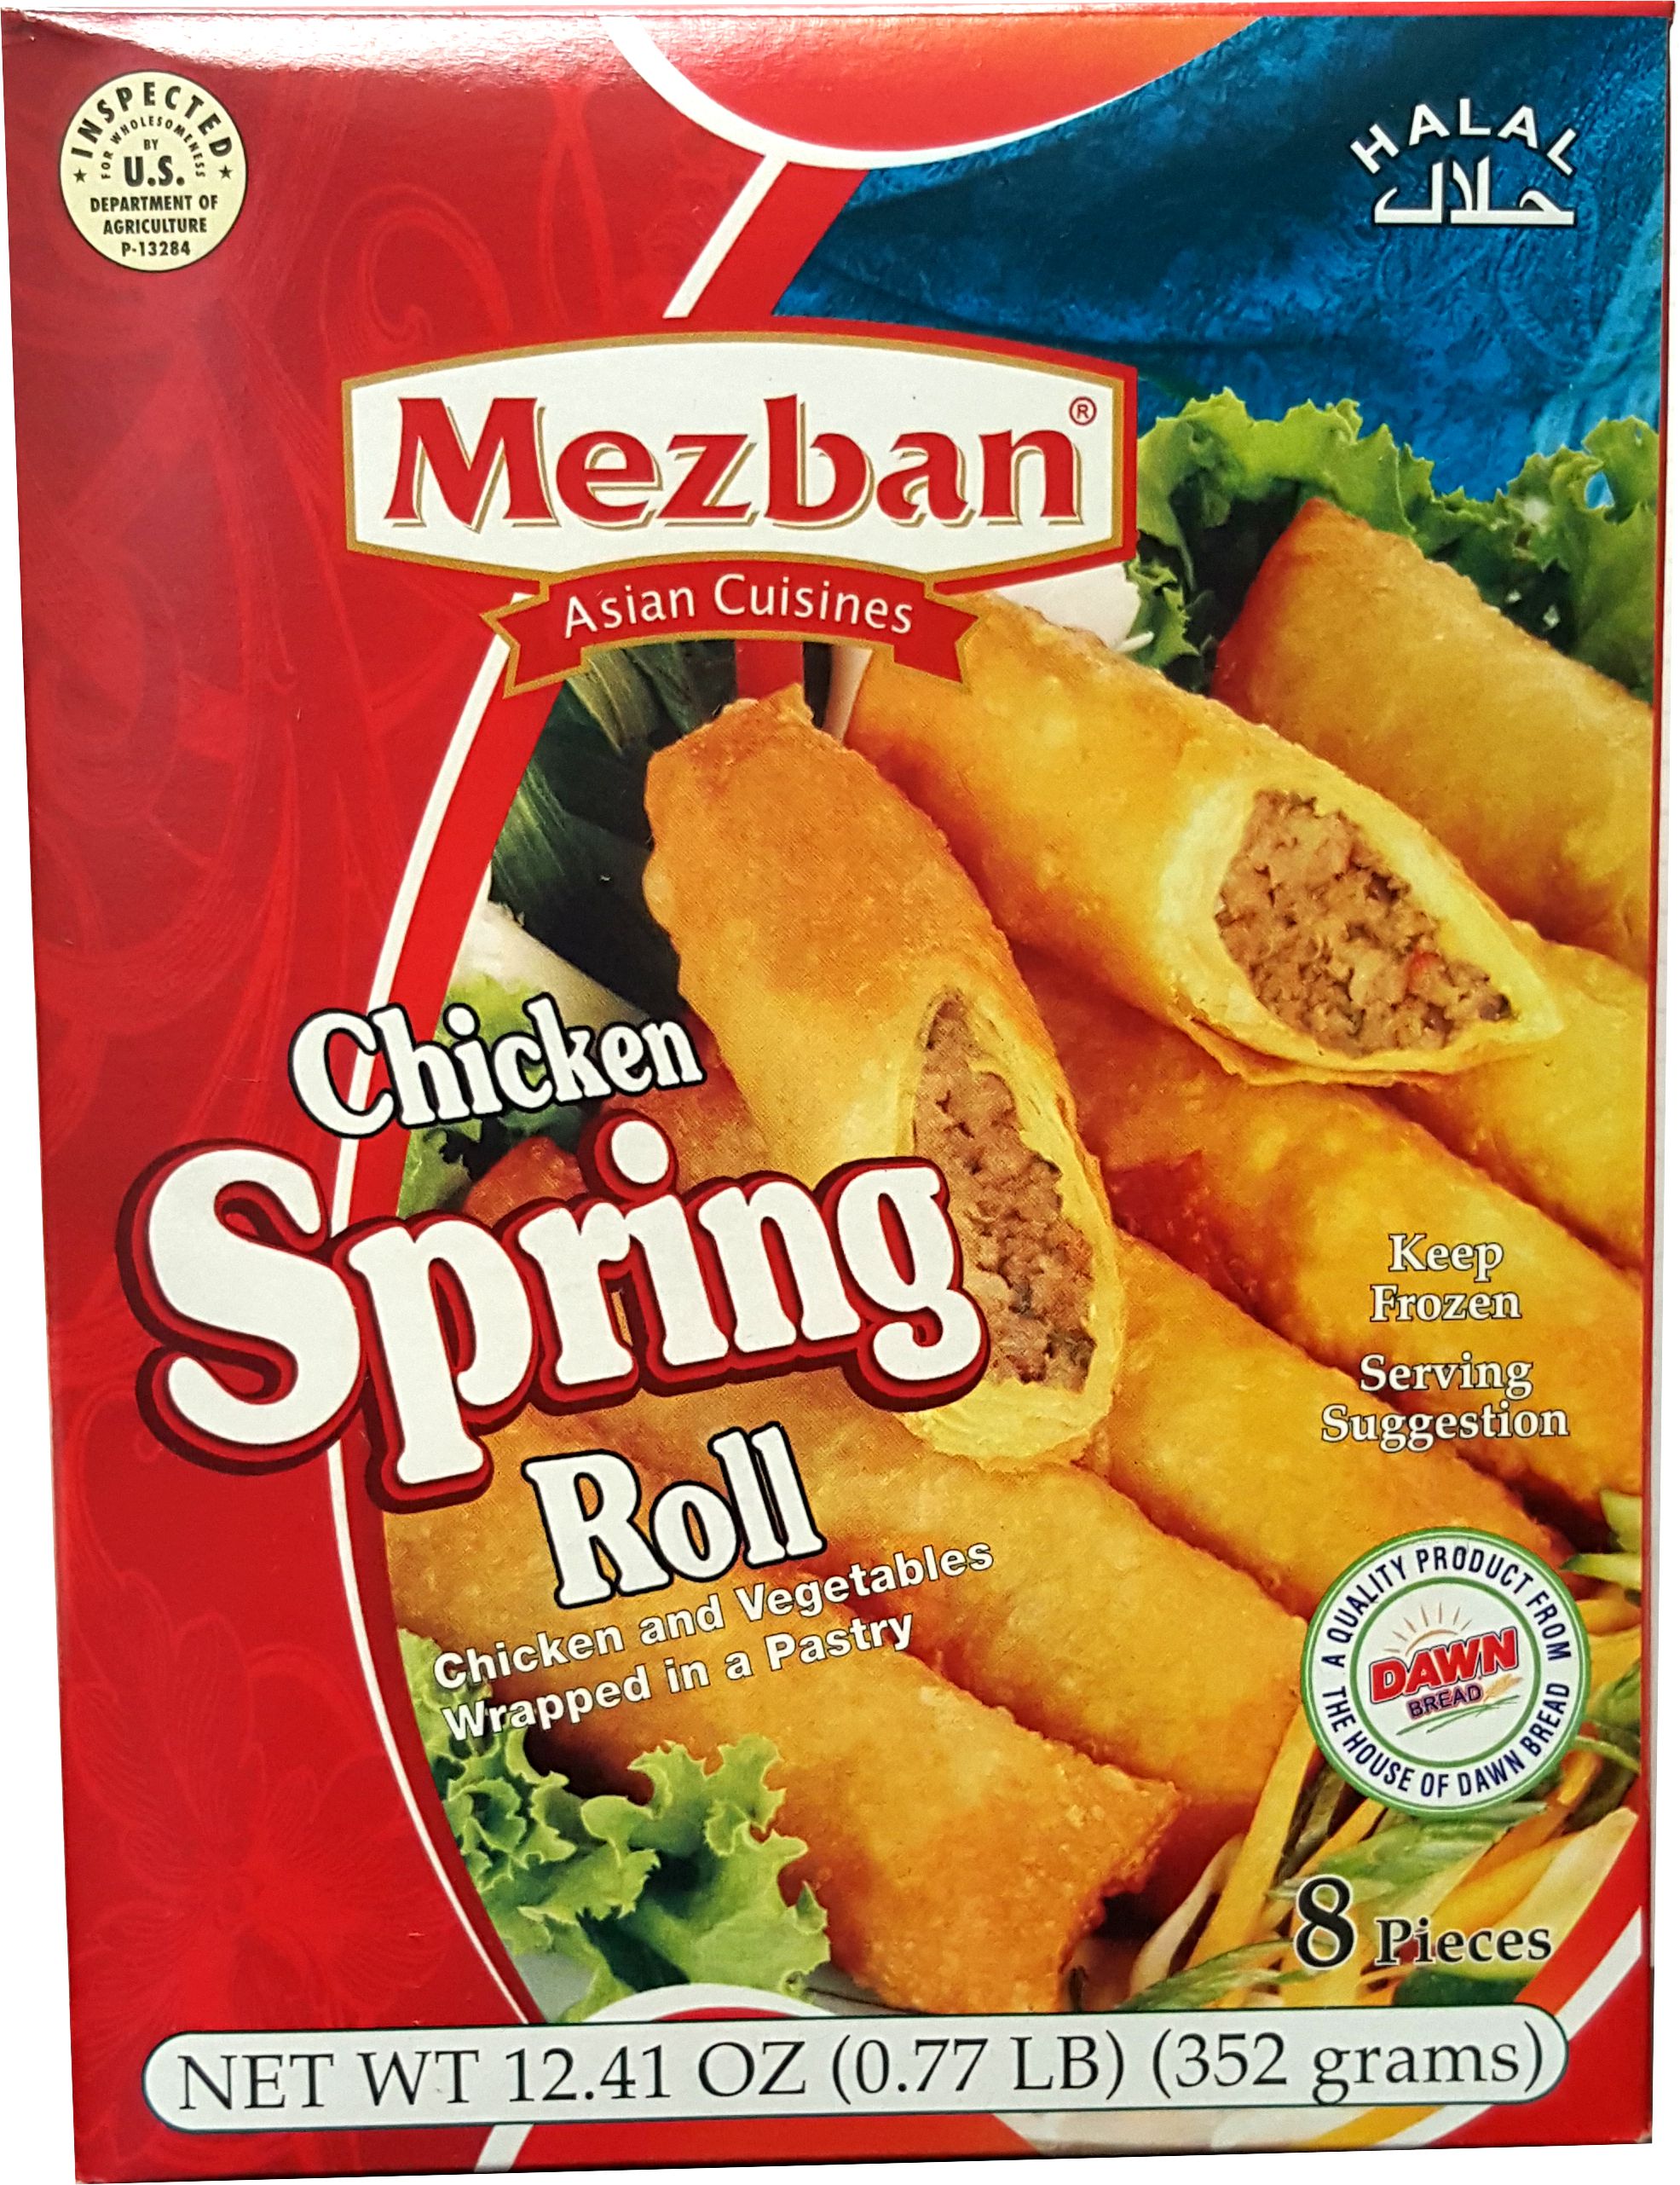 Chicken Spring Roll